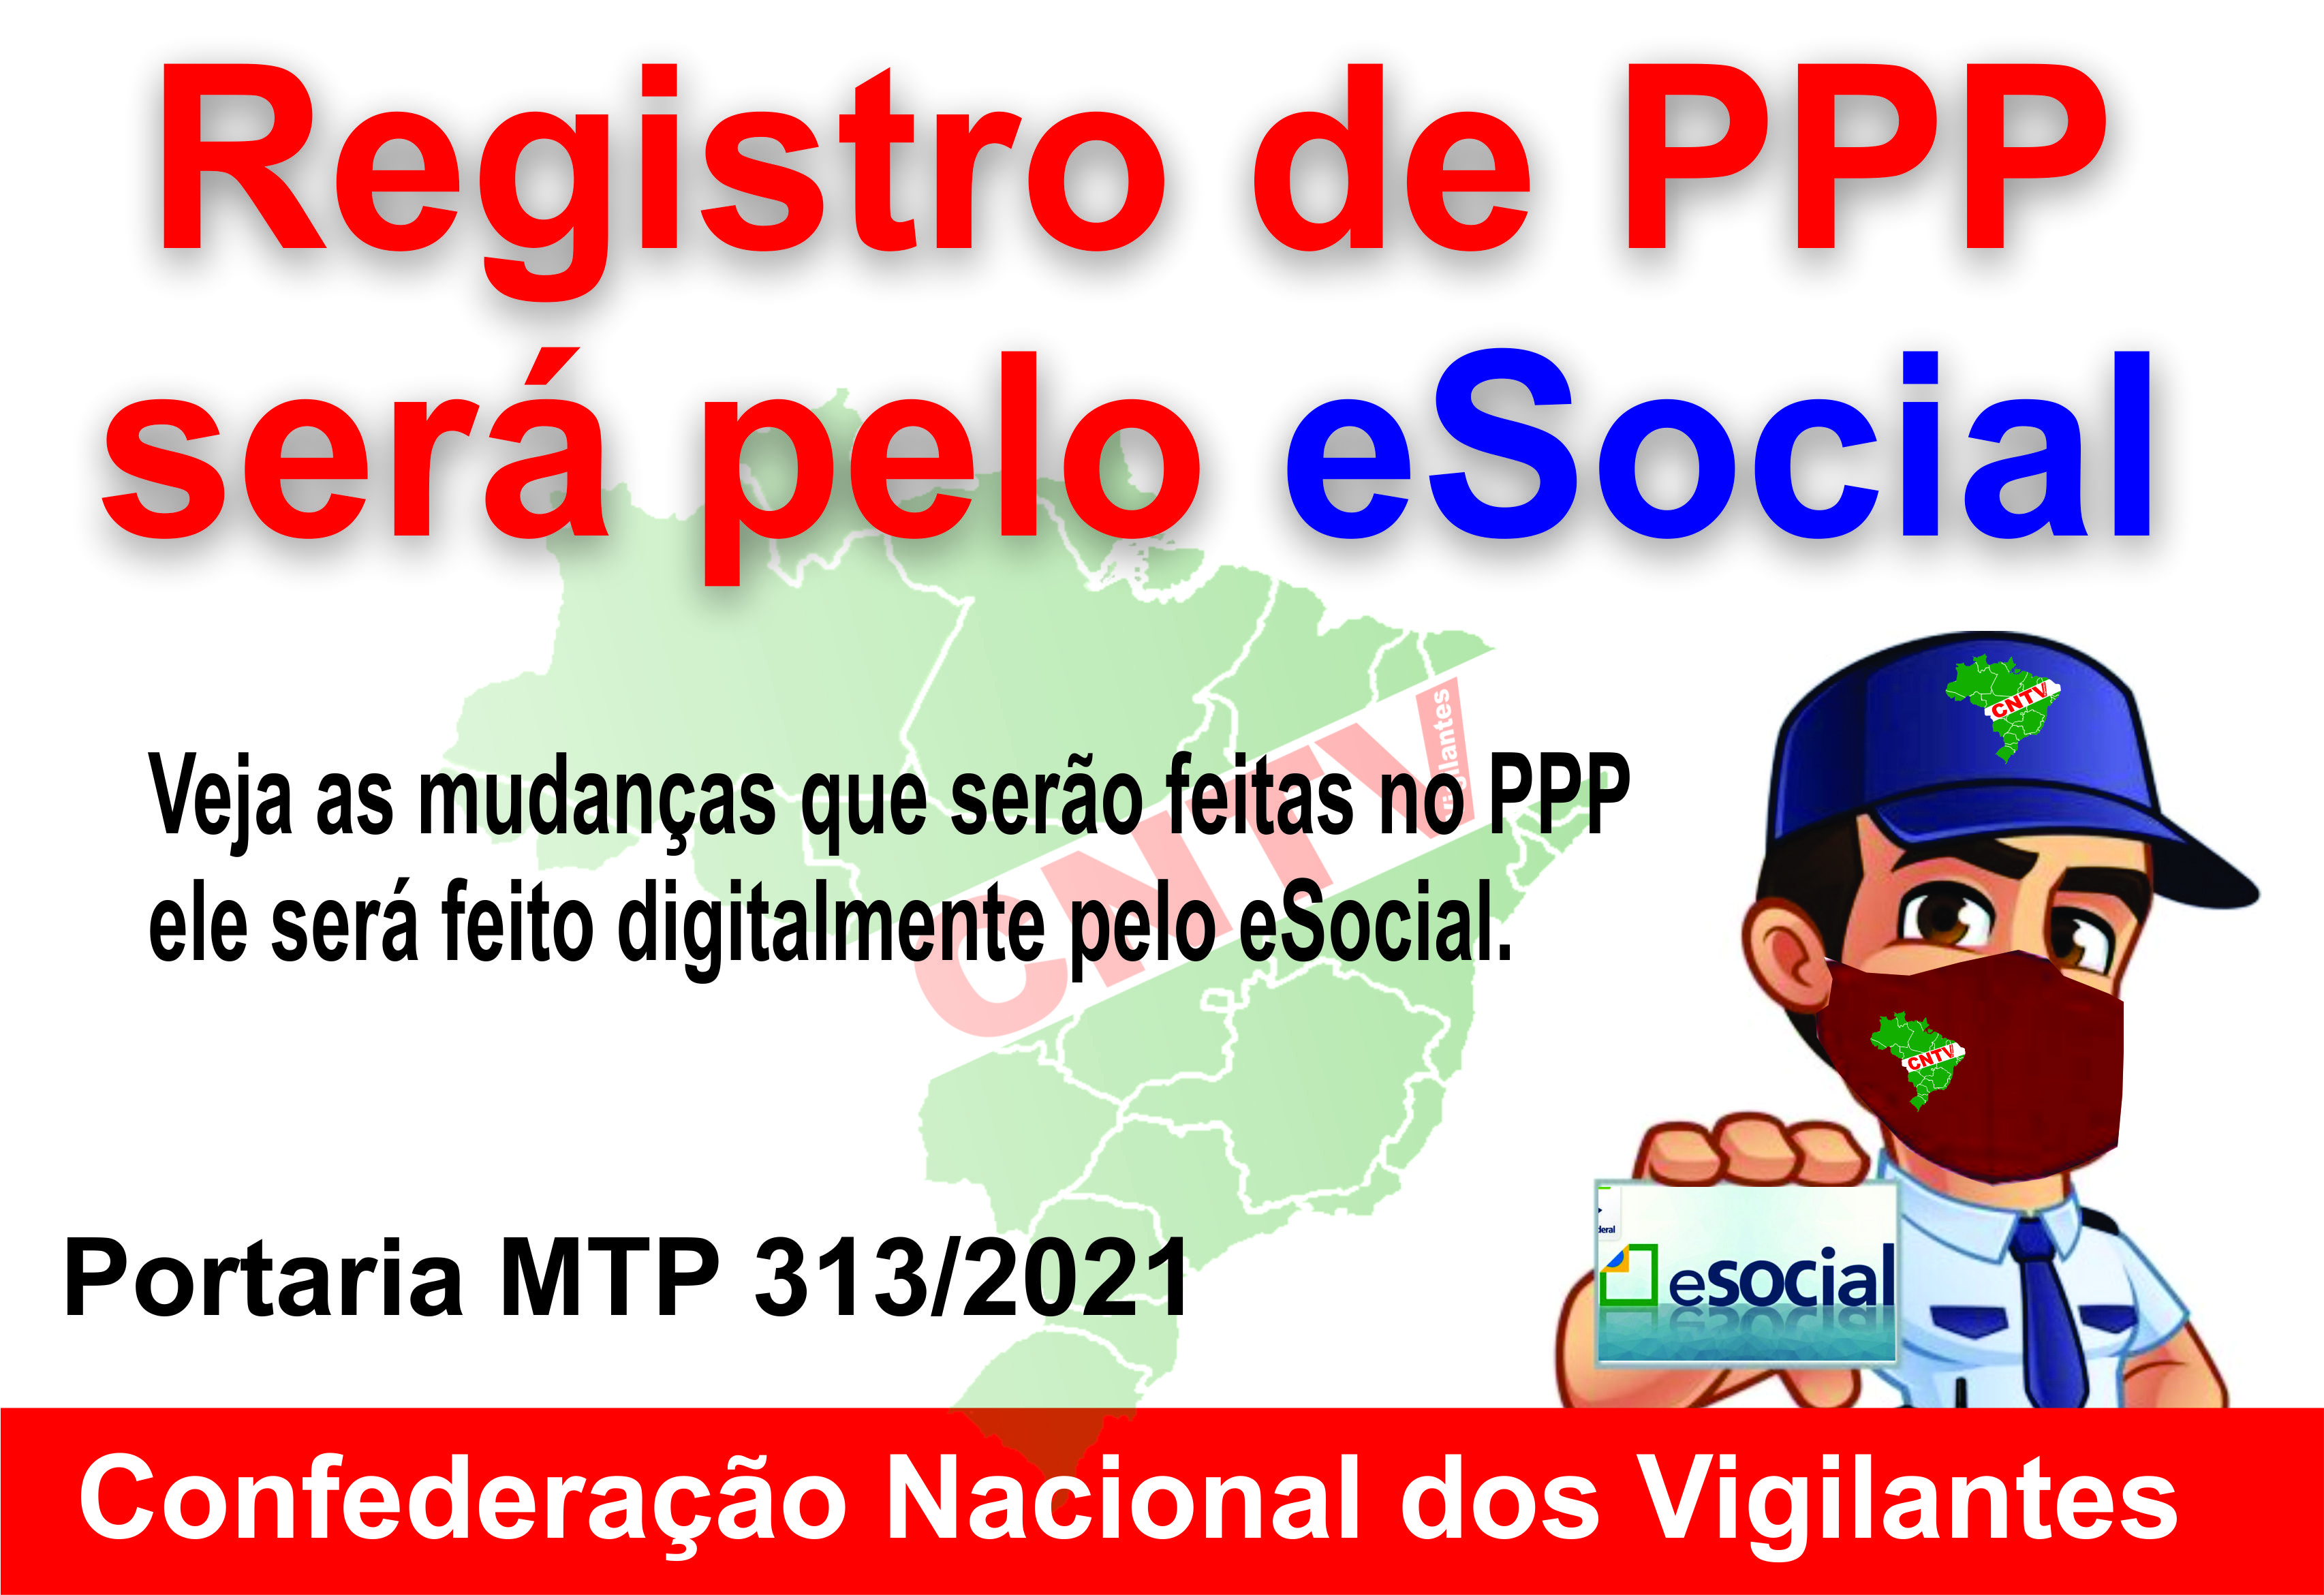 PPP - Registro de PPP será pelo eSocial